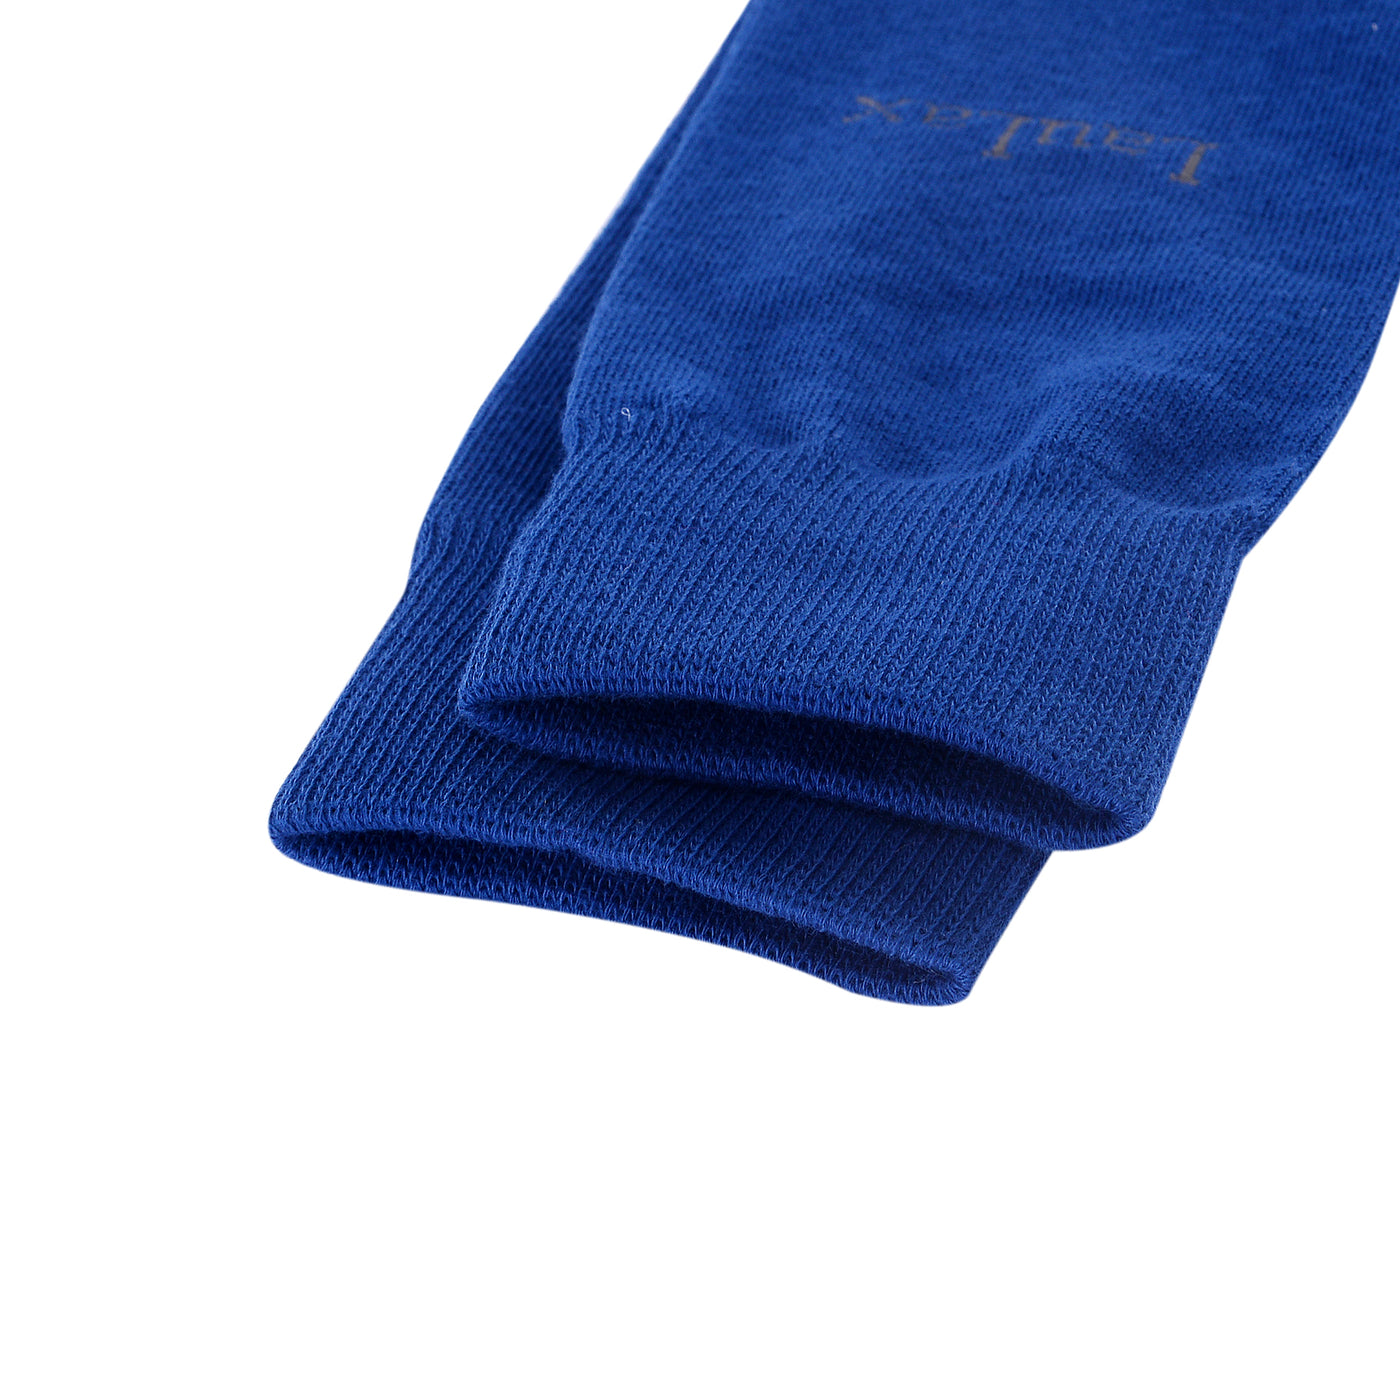 4 pares de calcetines de negocios con puntera lisa y sin costuras de algodón peinado de la mejor calidad, azul, set de regalo